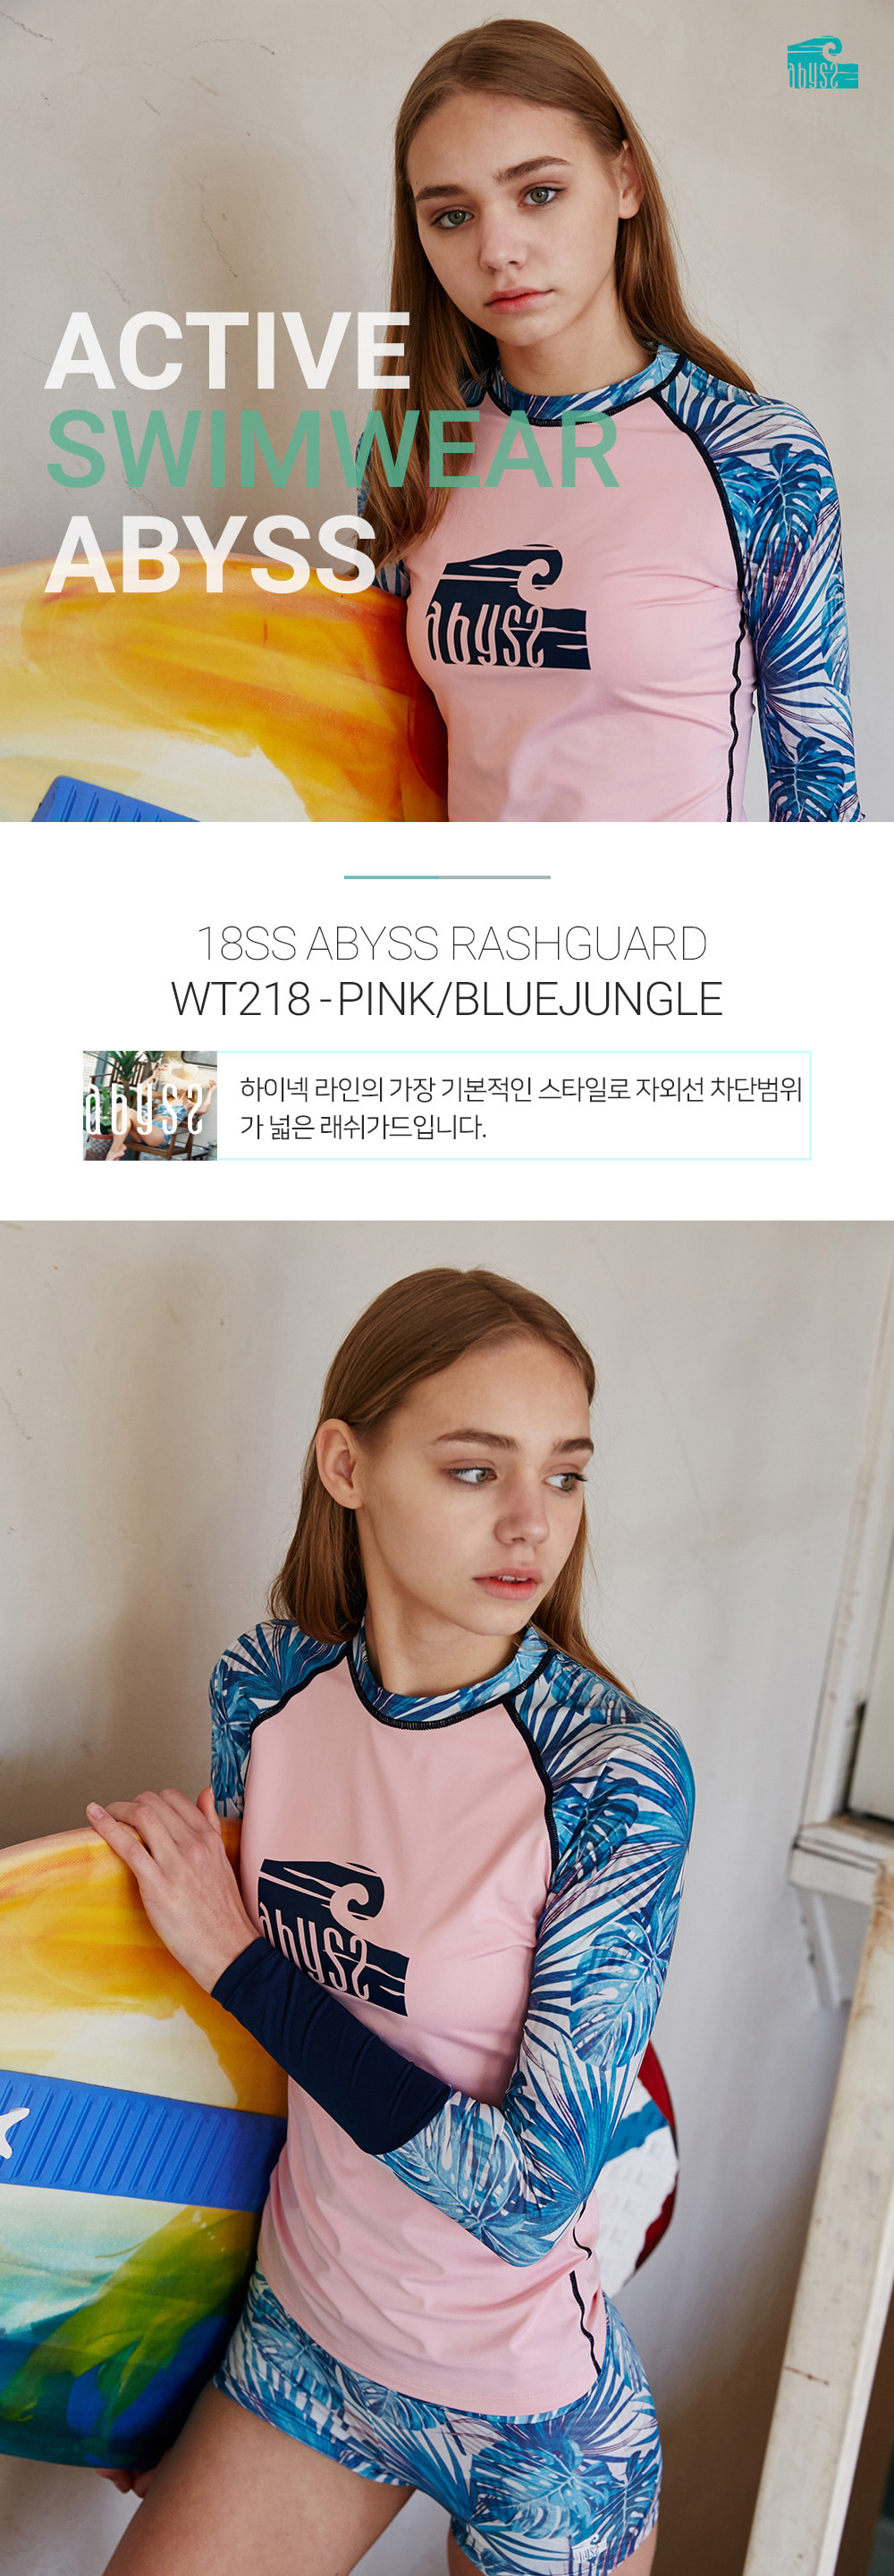 아비스 우먼 래쉬가드 WT218 핑크/블루정글